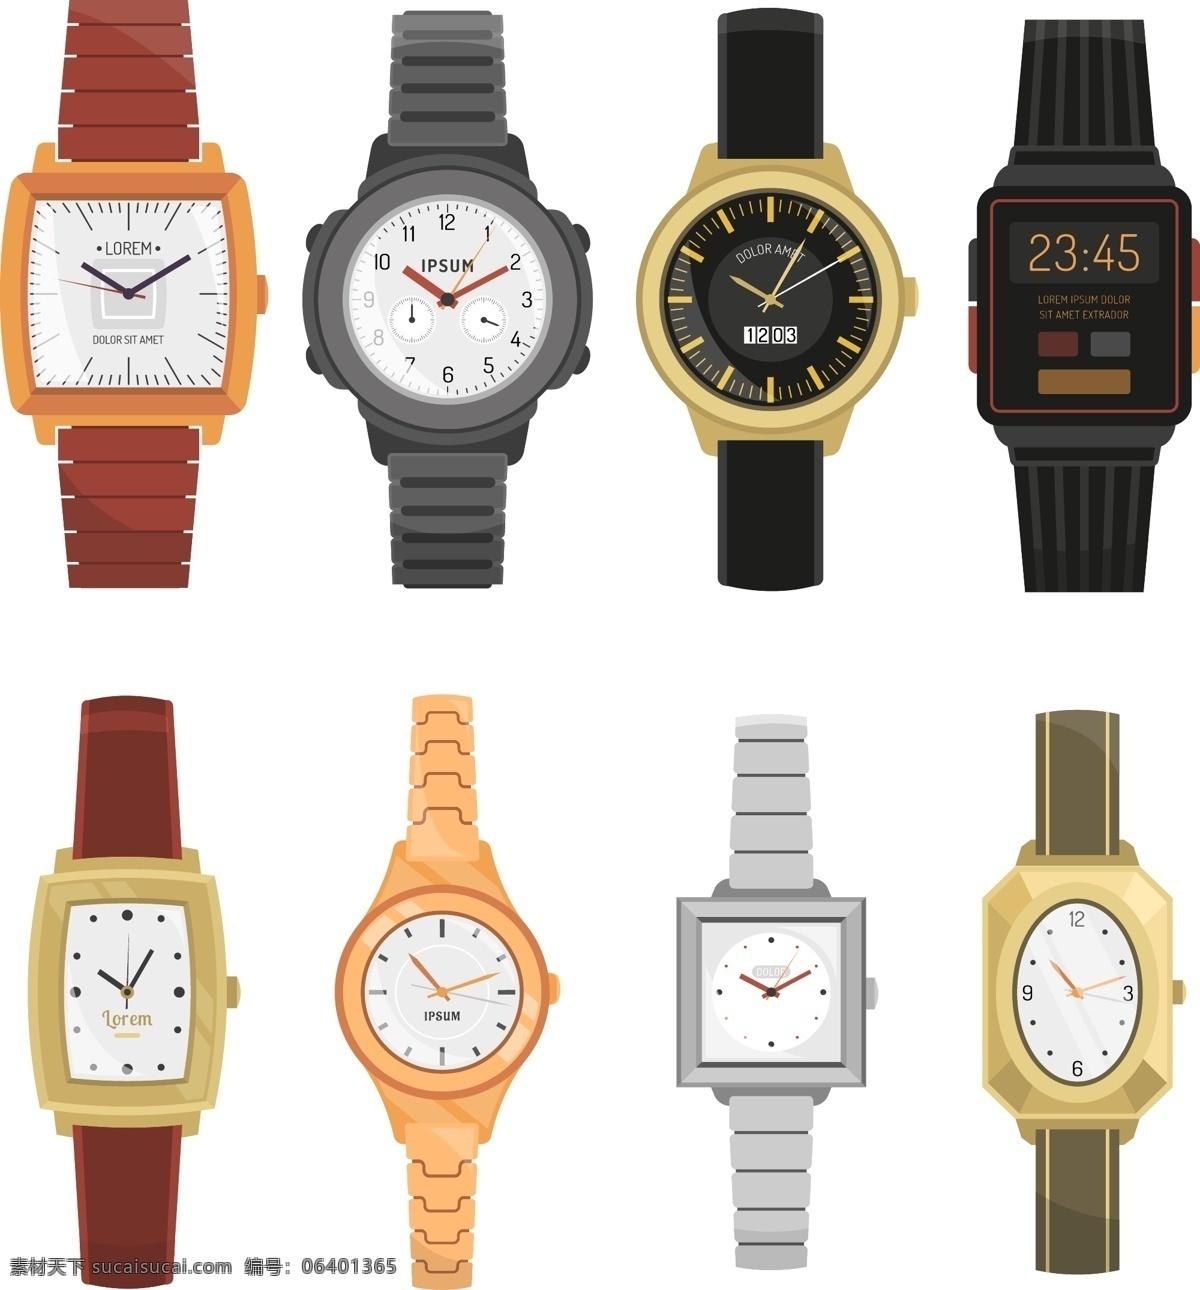 多款手表矢量 方形手表 圆形手表 卡通手表 金色手表 长方形手表 女士手表 男士手表 钢带手表 皮带手表 电子表 机械表 文化艺术 绘画书法